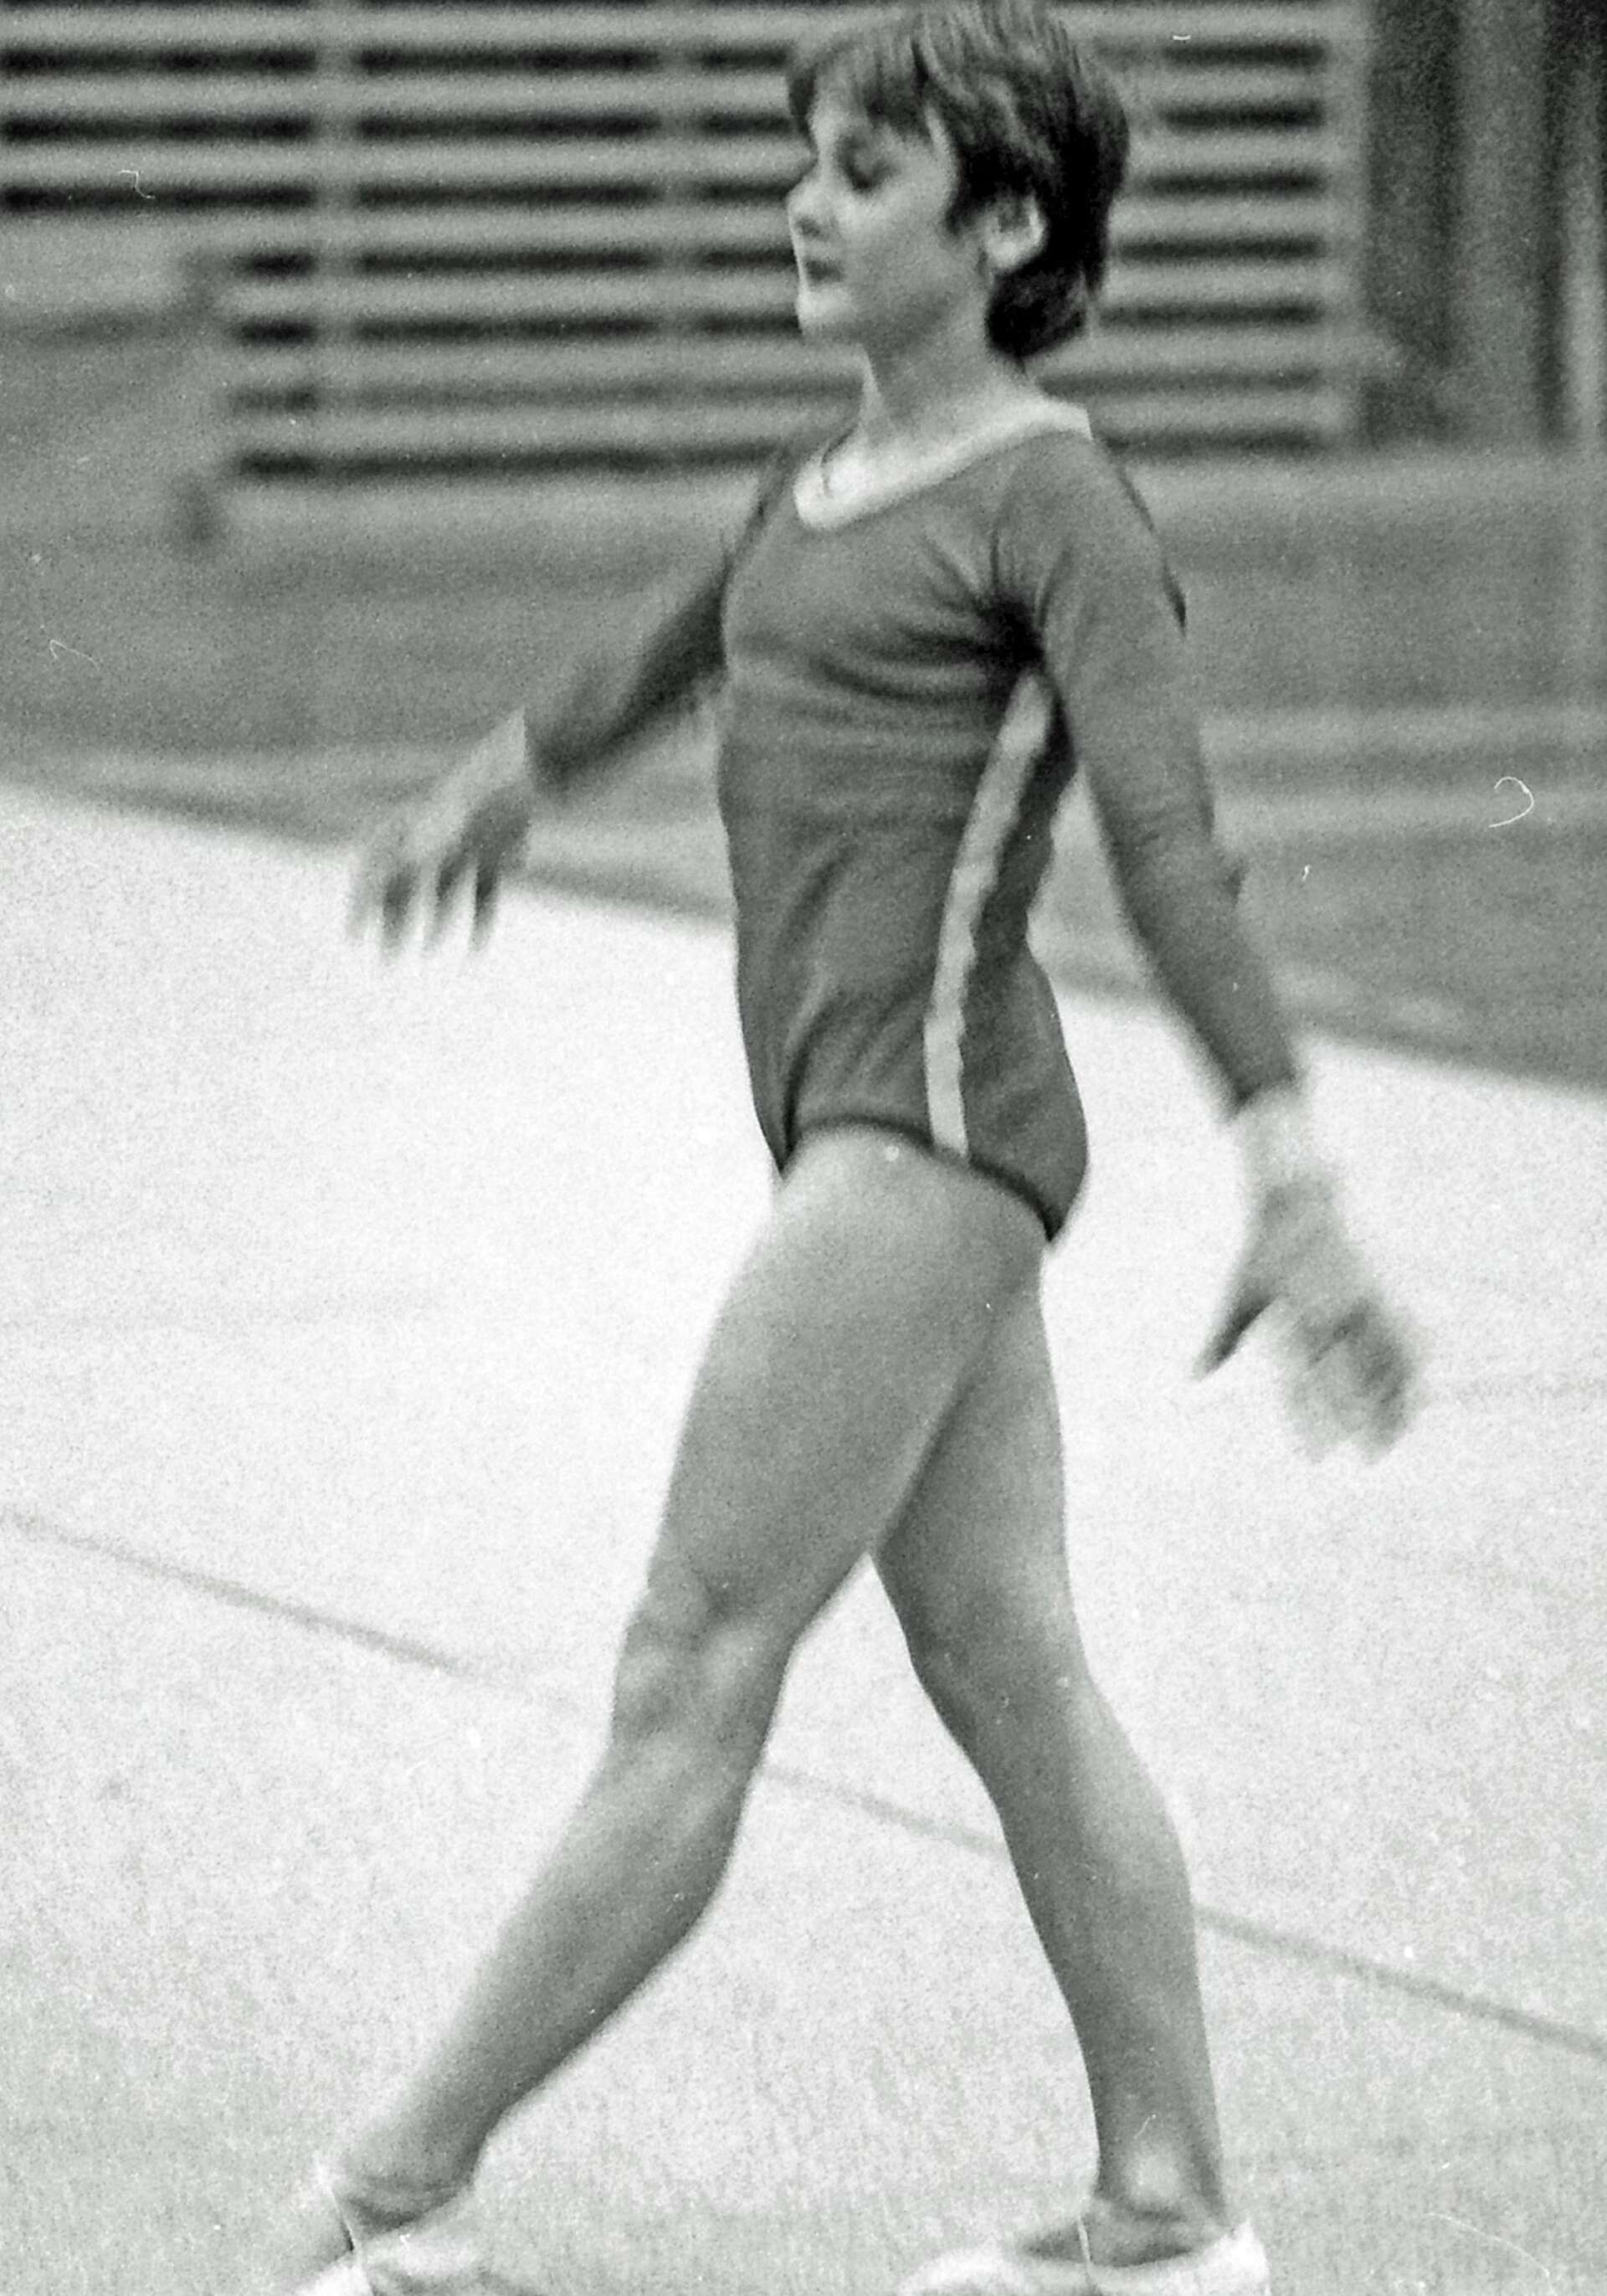 När en rumänsk gymnastiktrupp visade upp sig i Tegnérhallen 1984 fanns en ung talang med. Det var Camelia ”Nelly” Voinea, som då var 14 år. Fyra år senare blev hos silvermedaljör i OS i Sydkorea.